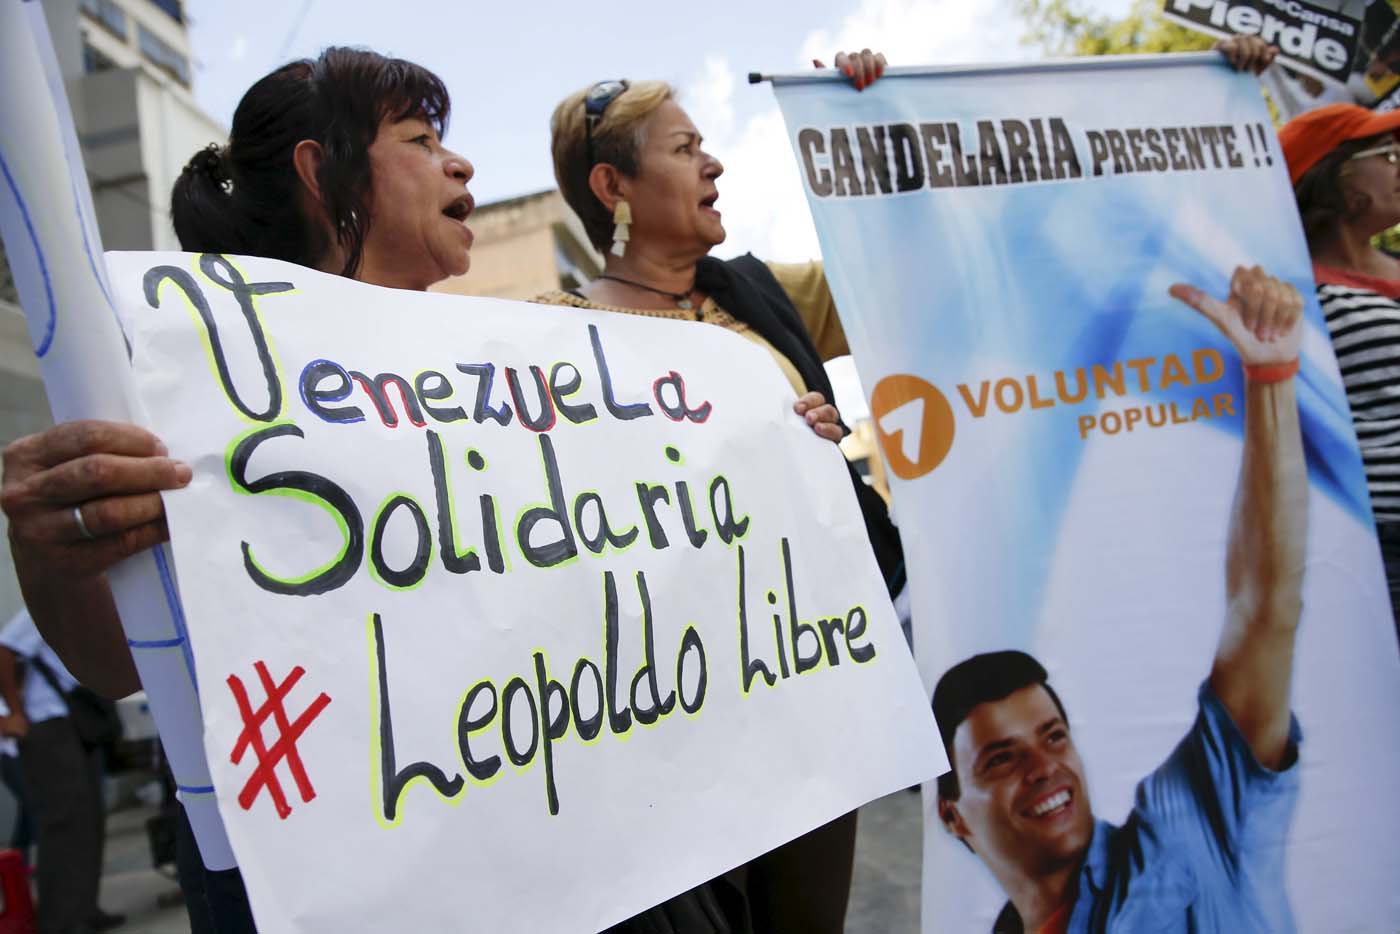 Partido Socialista chileno: Lo que expresó nuestra Cancillería fue absolutamente prudente